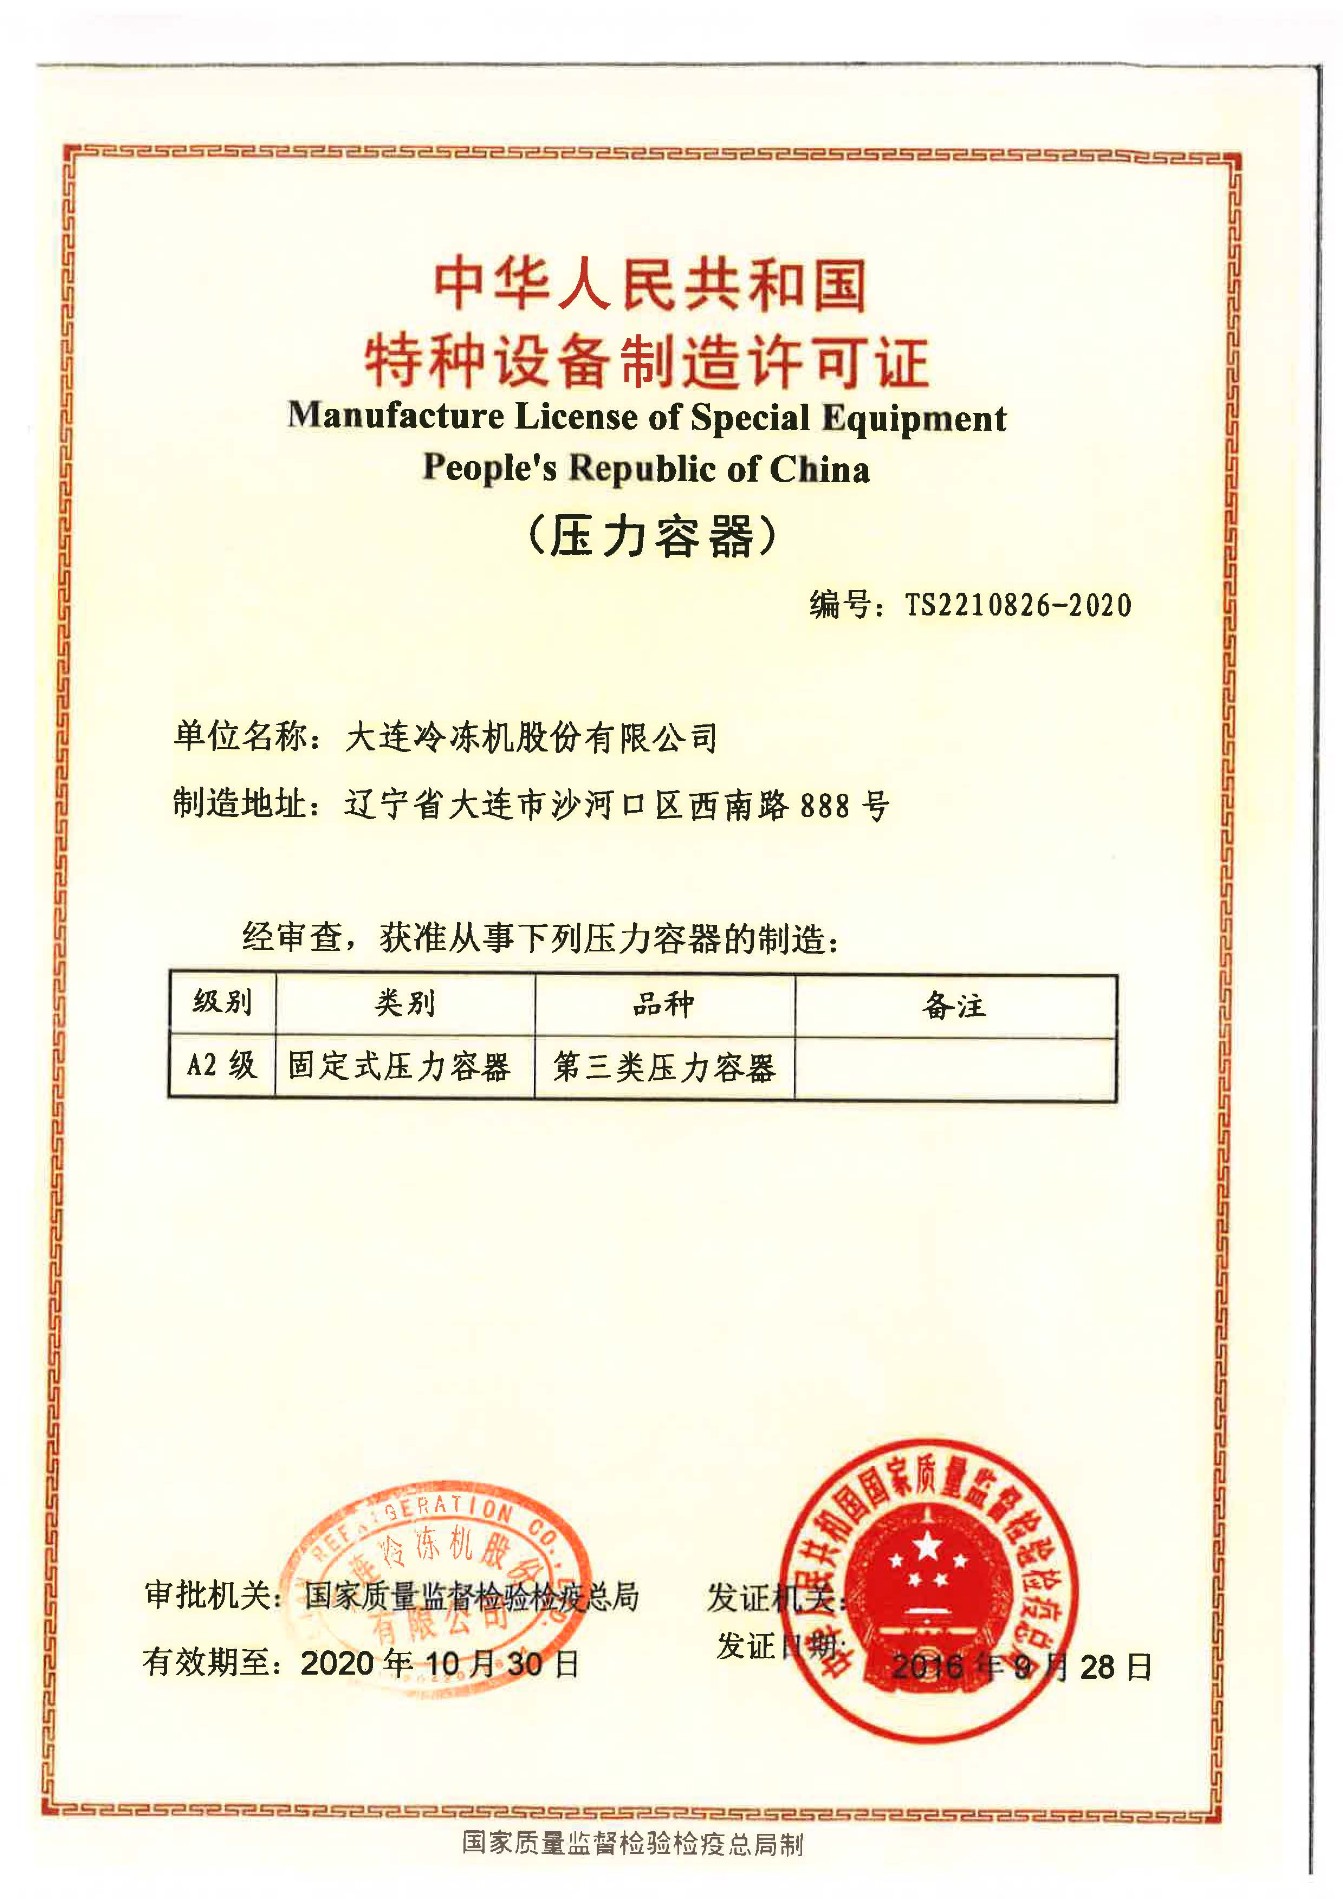 Производство Лицензия Специальное оборудование Народной Республики Китай